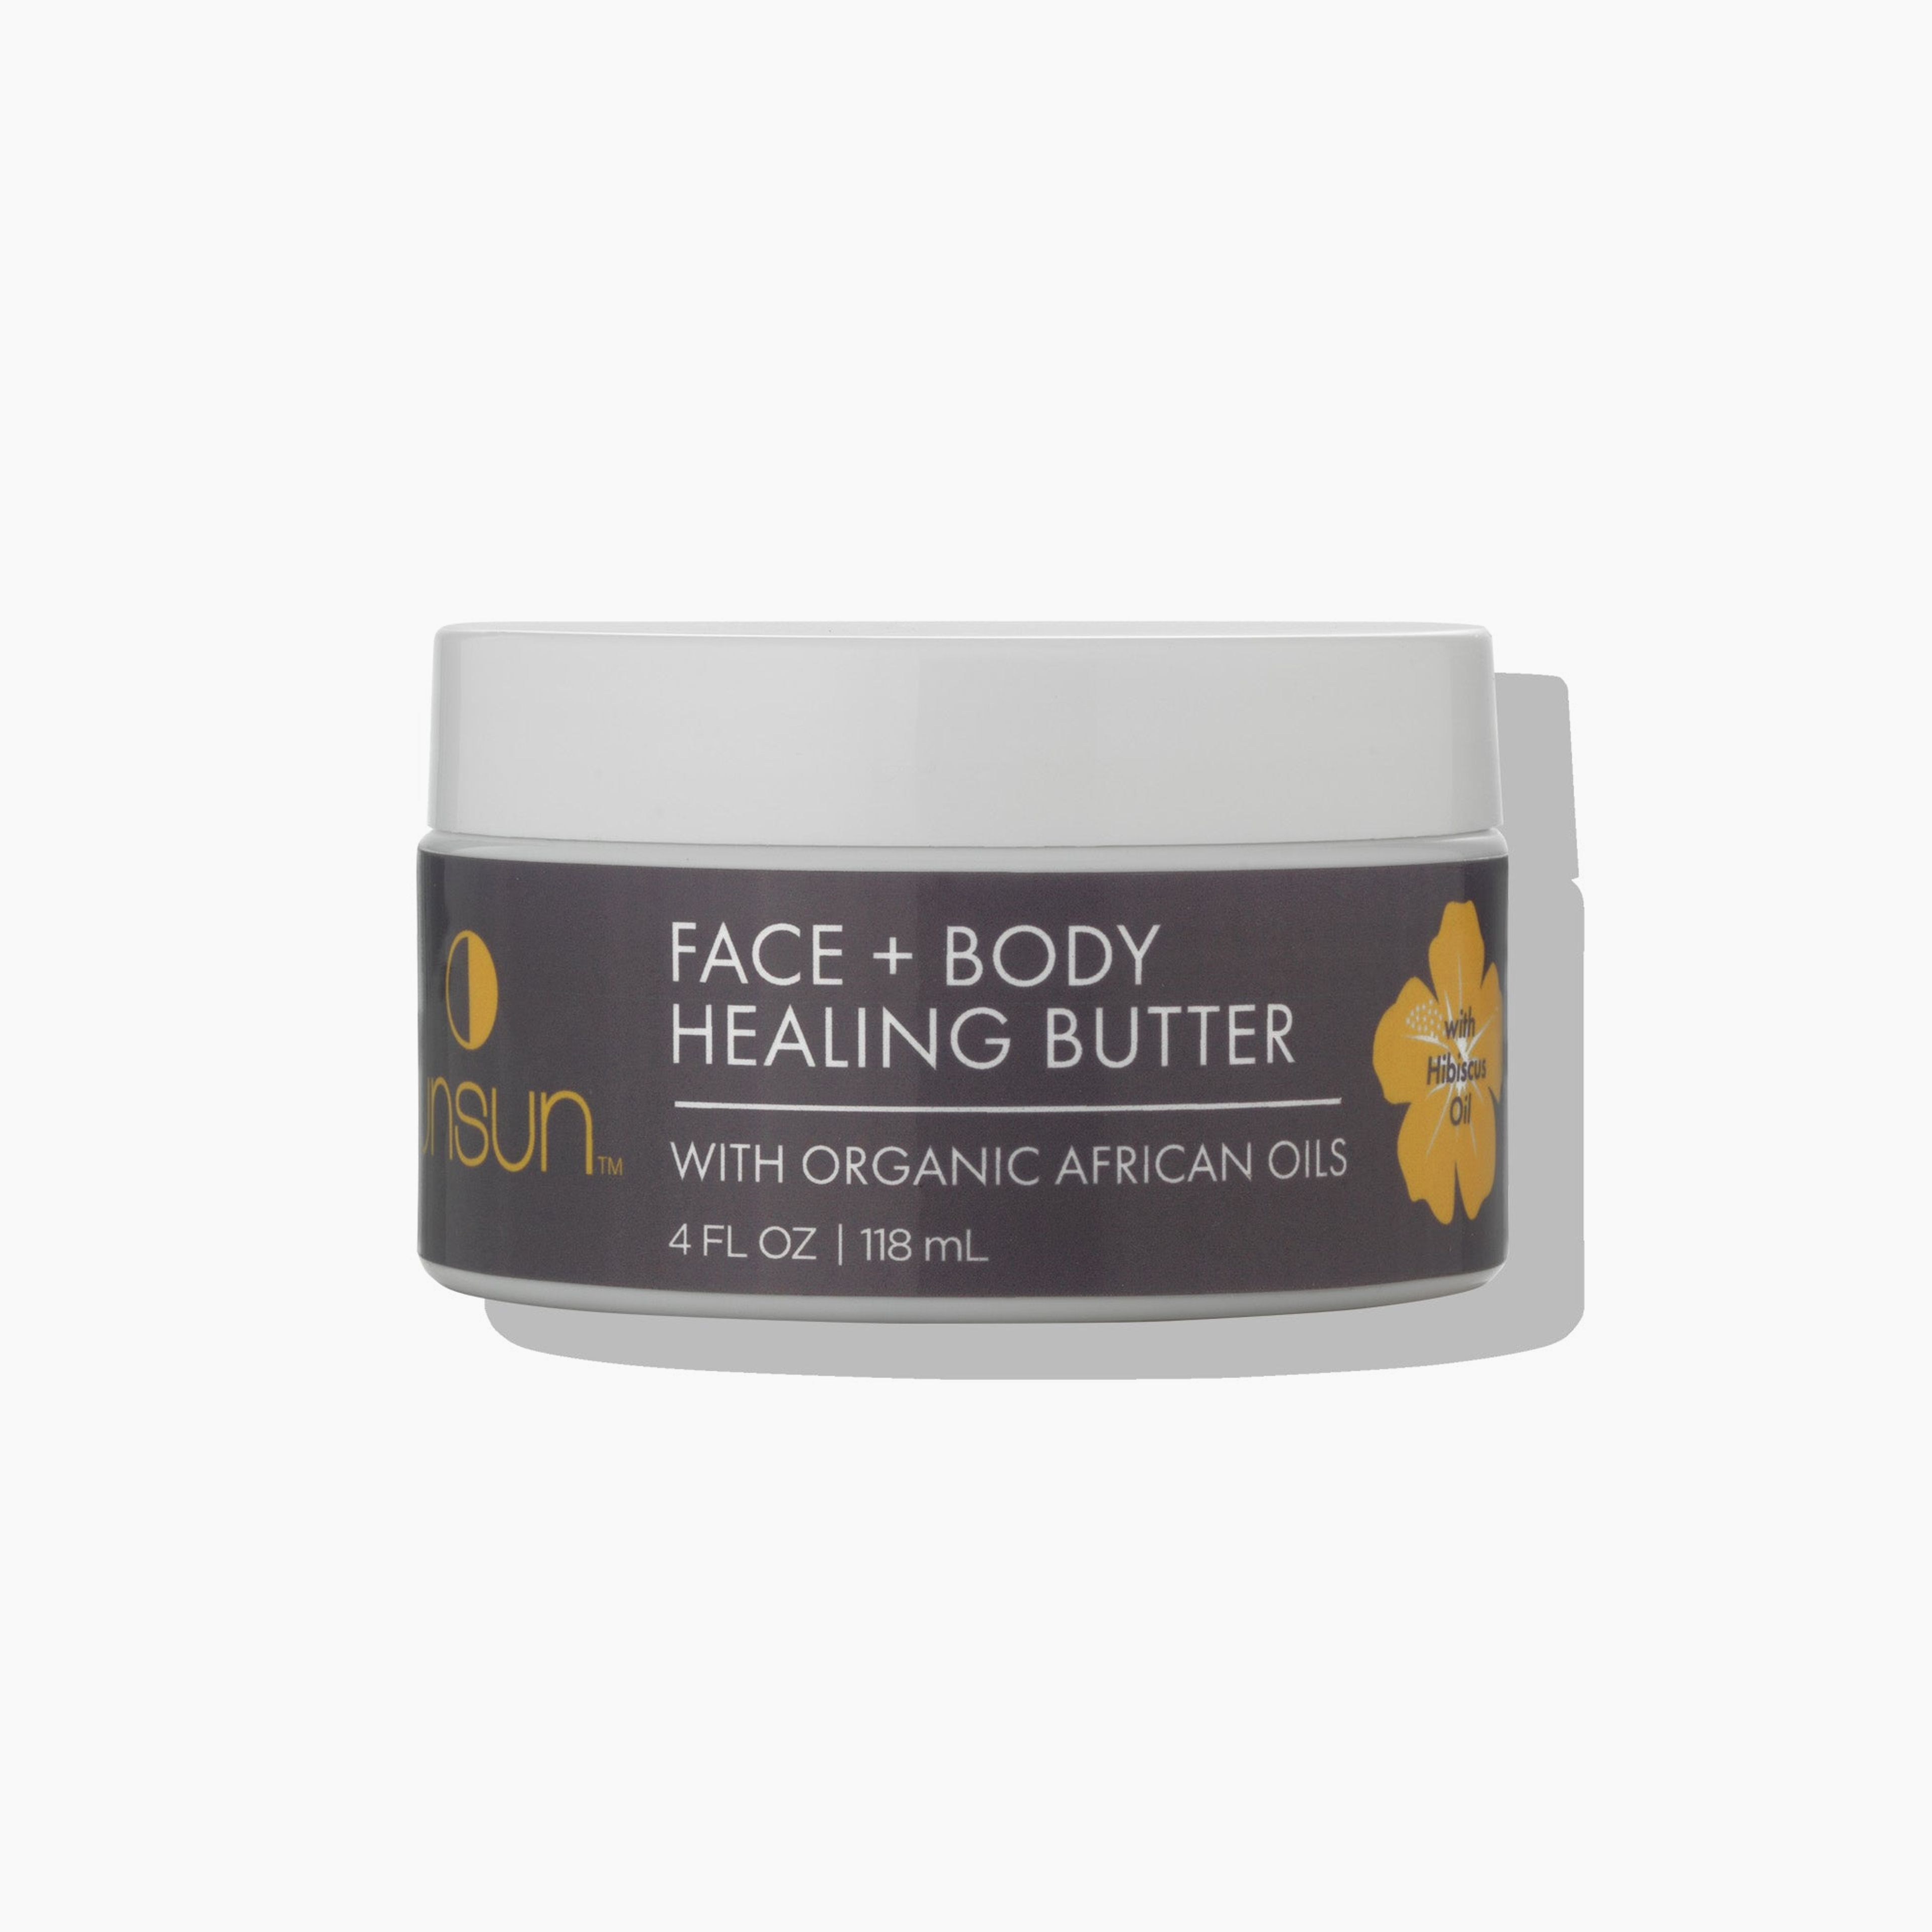 Face + Body Healing Butter